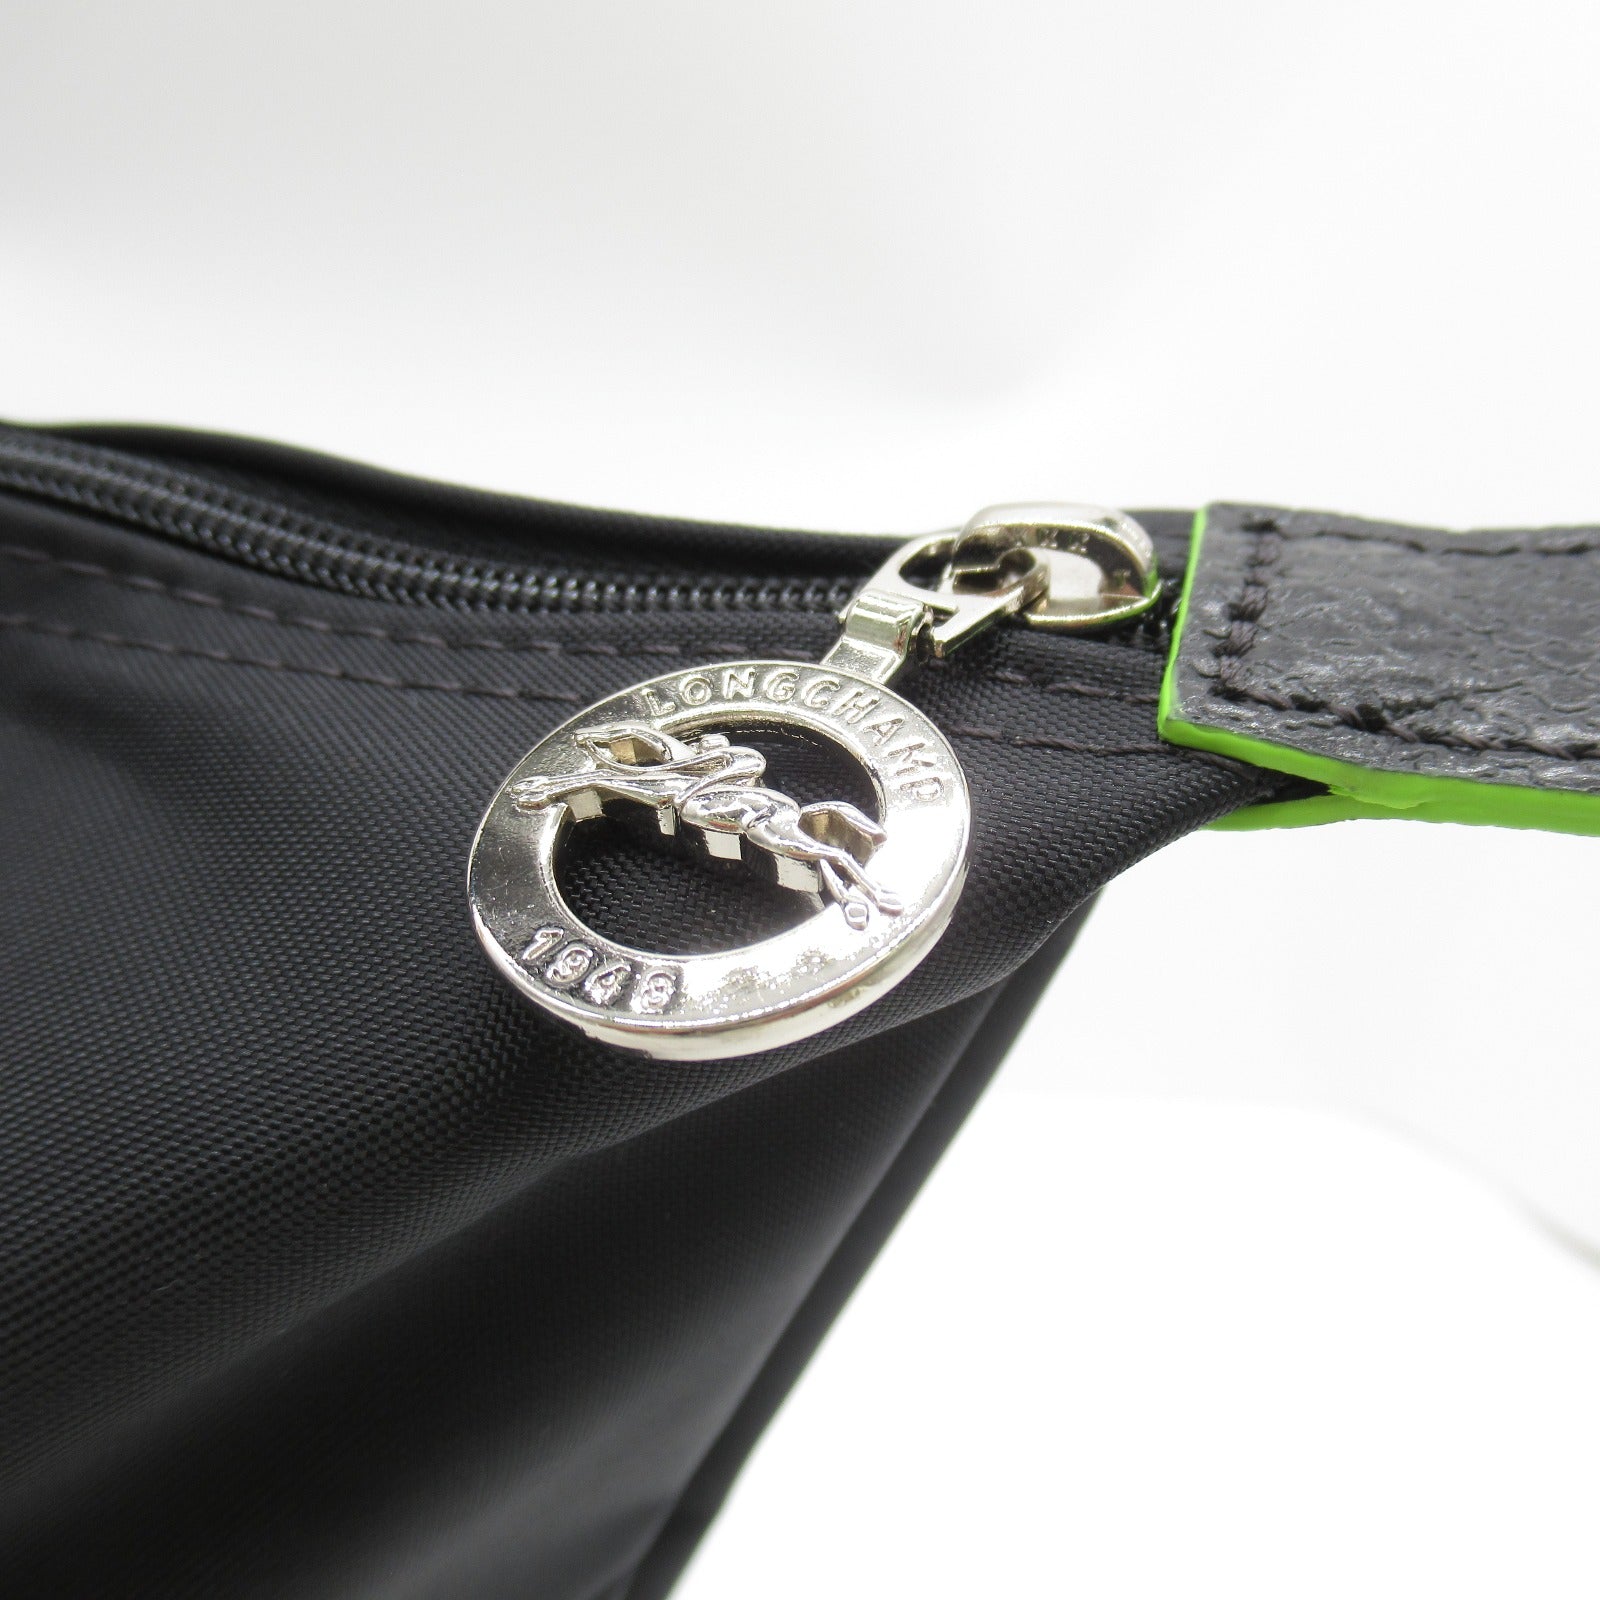 Longchamp Le Priorage Green L Shoulder Bag Bag Recycled Polyamide  Black  Noir L1899919001